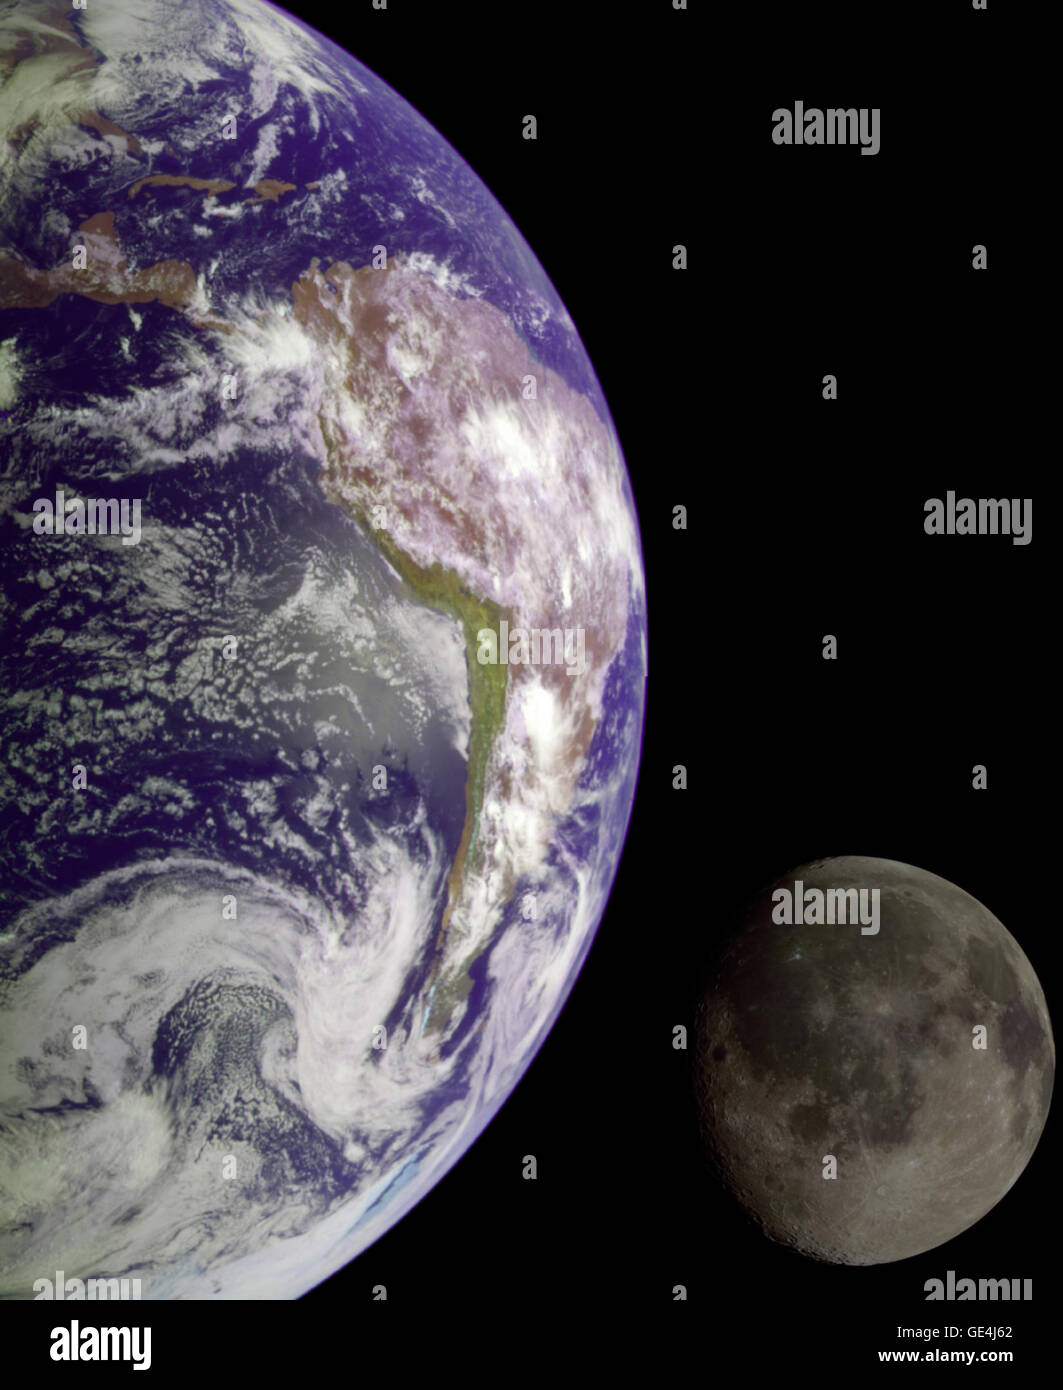 Durante su vuelo, la nave espacial Galileo regresó imágenes de la tierra y la Luna. Separar las imágenes de la tierra y la Luna fueron combinadas para crear esta vista. La nave espacial Galileo tomó imágenes en 1992 en su camino para explorar el sistema de Júpiter en 1995-97. La imagen muestra una vista parcial de la tierra centrado en el Océano Pacífico a unos 20 grados de latitud sur. La costa oeste de América del Sur pueden ser observados, así como el Caribe; remolinos de nube blanca indican patrones de tormentas en el Pacífico Sudeste. Las distintas rayo brillante cráter en la parte inferior de la luna es la cuenca de impacto Tycho. El lun Foto de stock